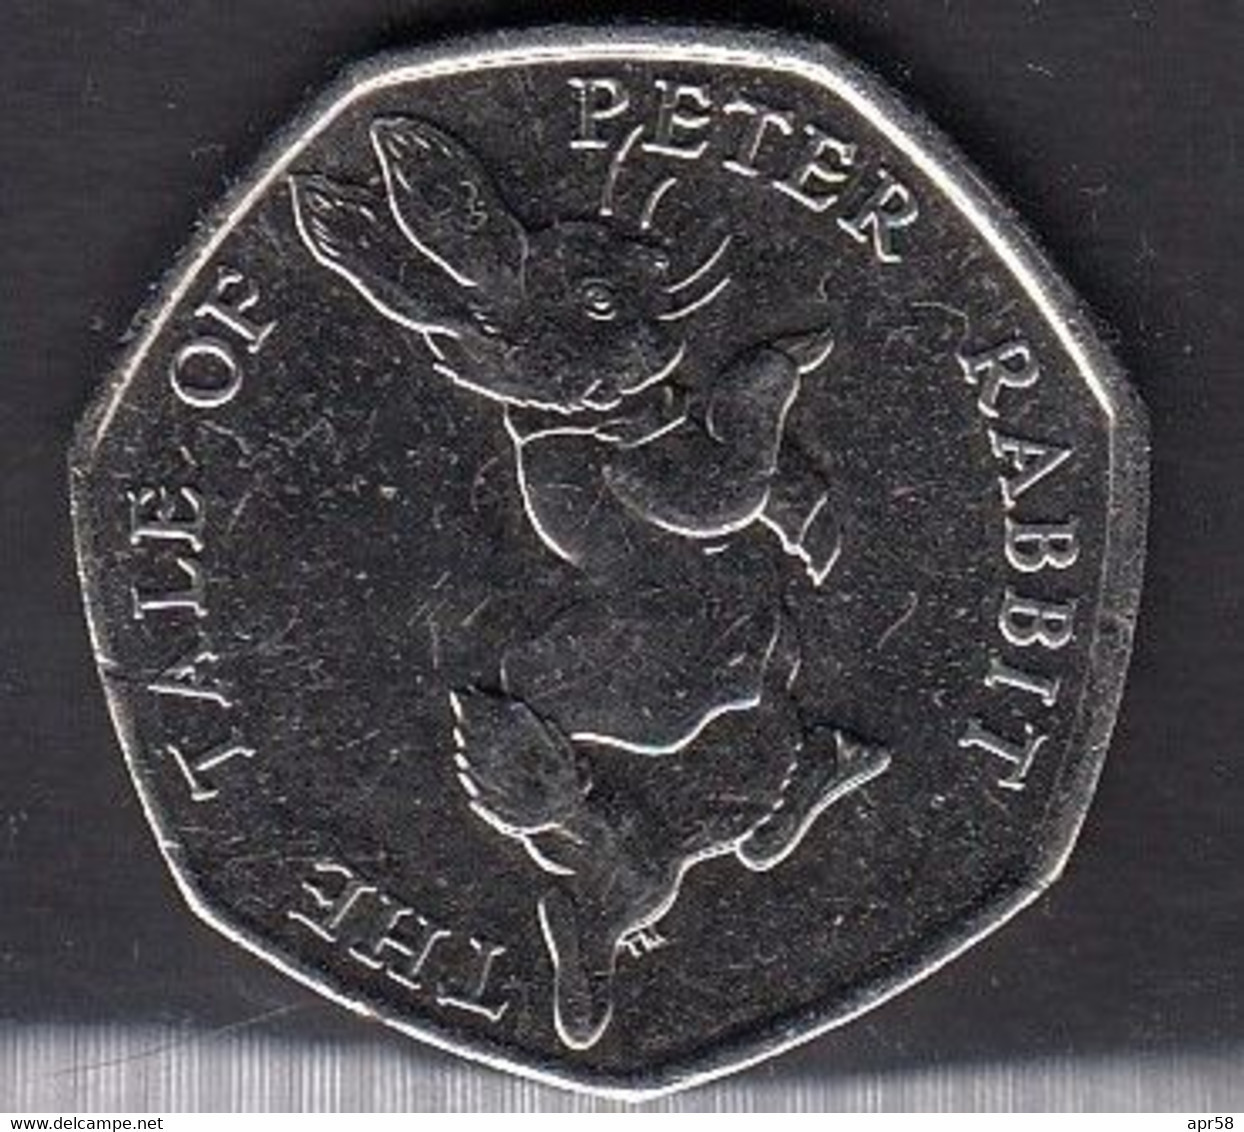 2017 50p Peter Rabbit - 50 Pence